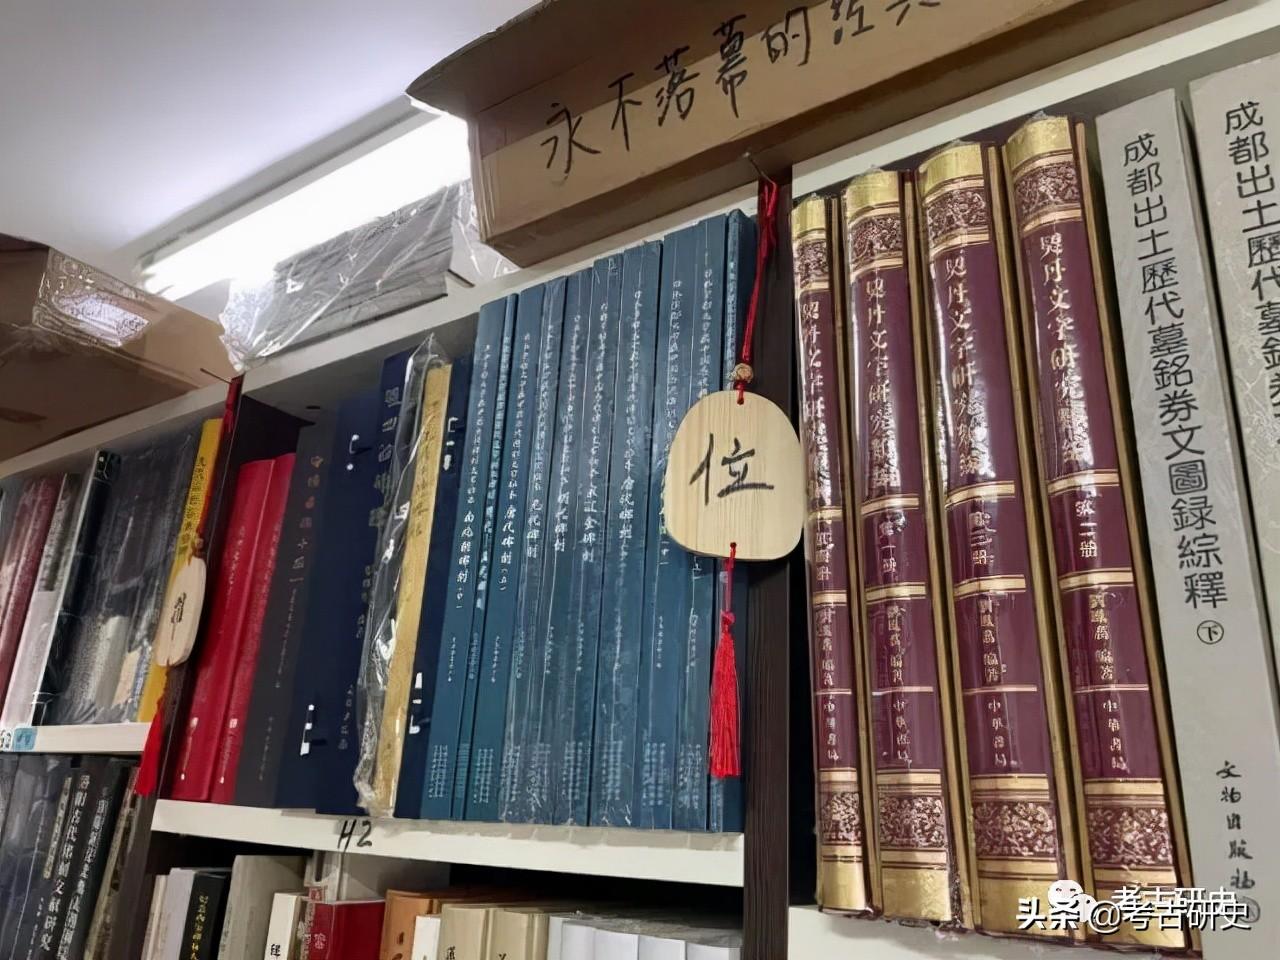 不拼颜值拼专业——人文考古书店的十年坚守